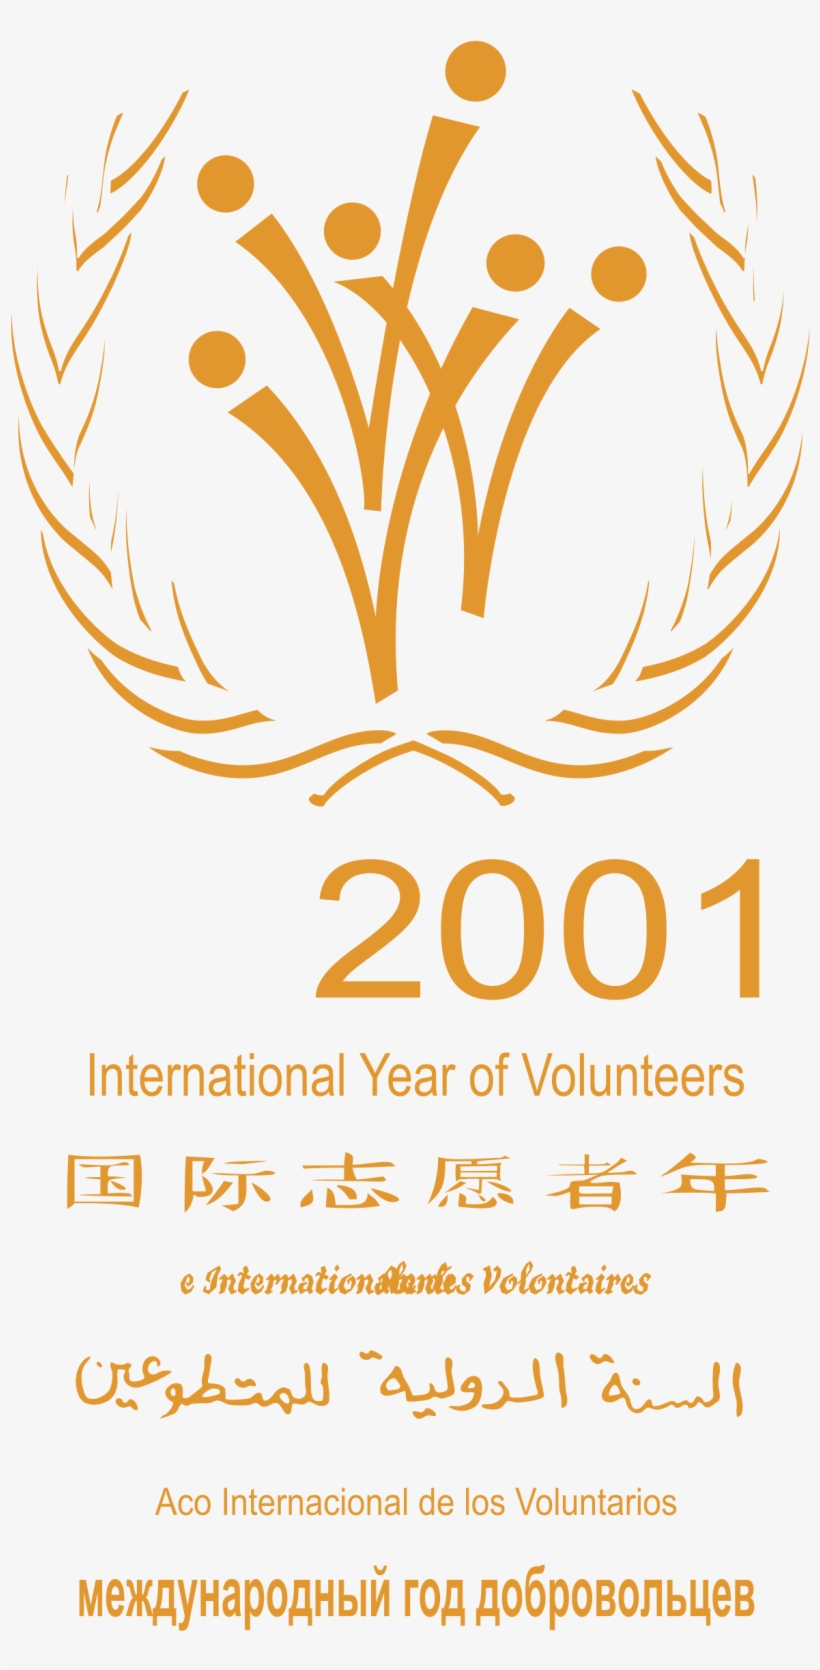 International Year Of Volunteers Logo Png Transparent - International Volunteer Day 2017, transparent png #3586154